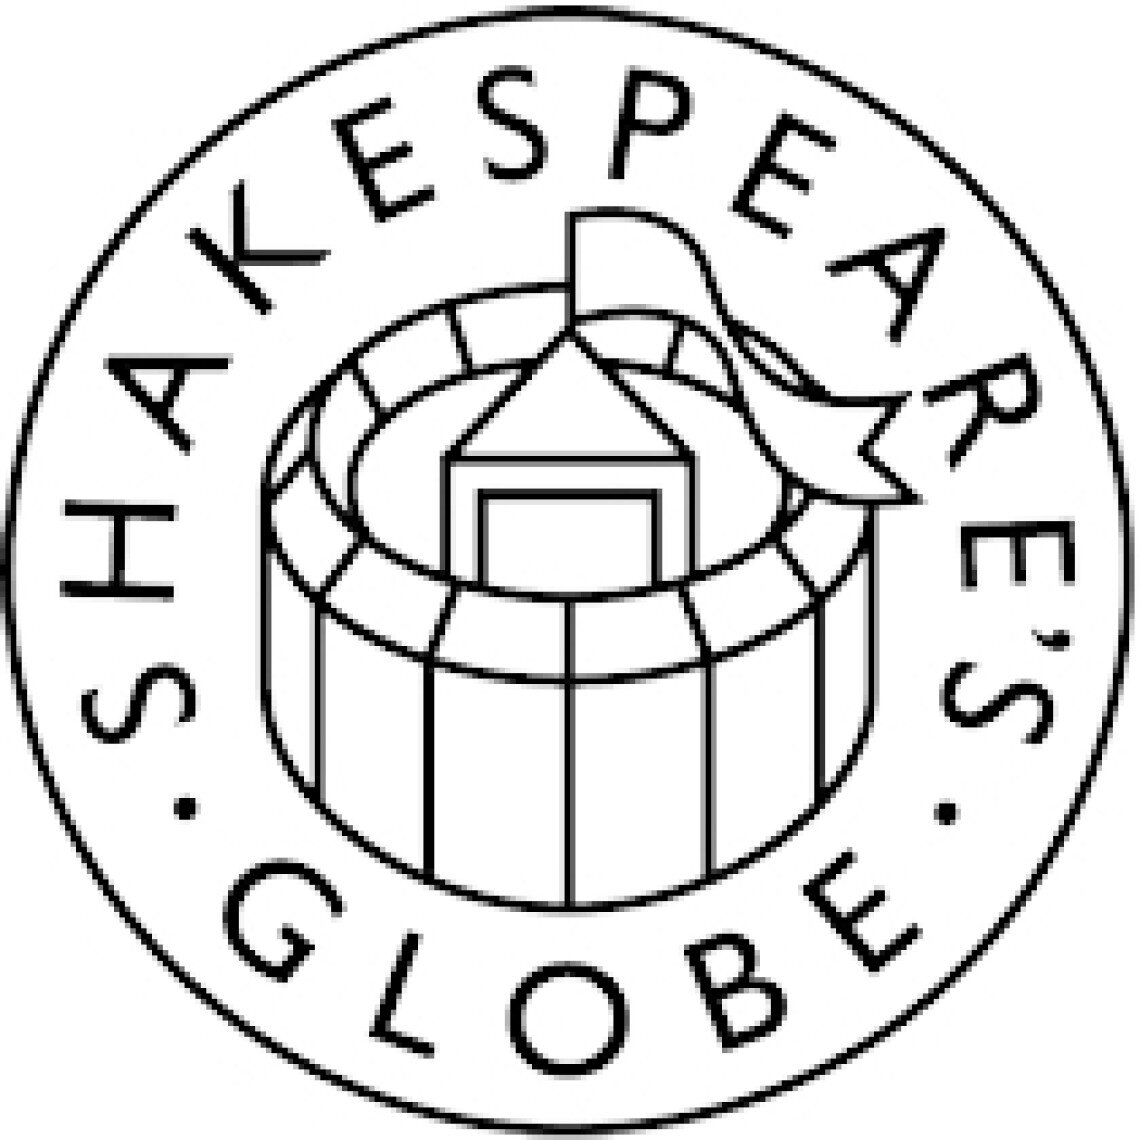 shakespeares-globe-sok-huho-semmiert-gyulai-varszinhaz-02.jpg